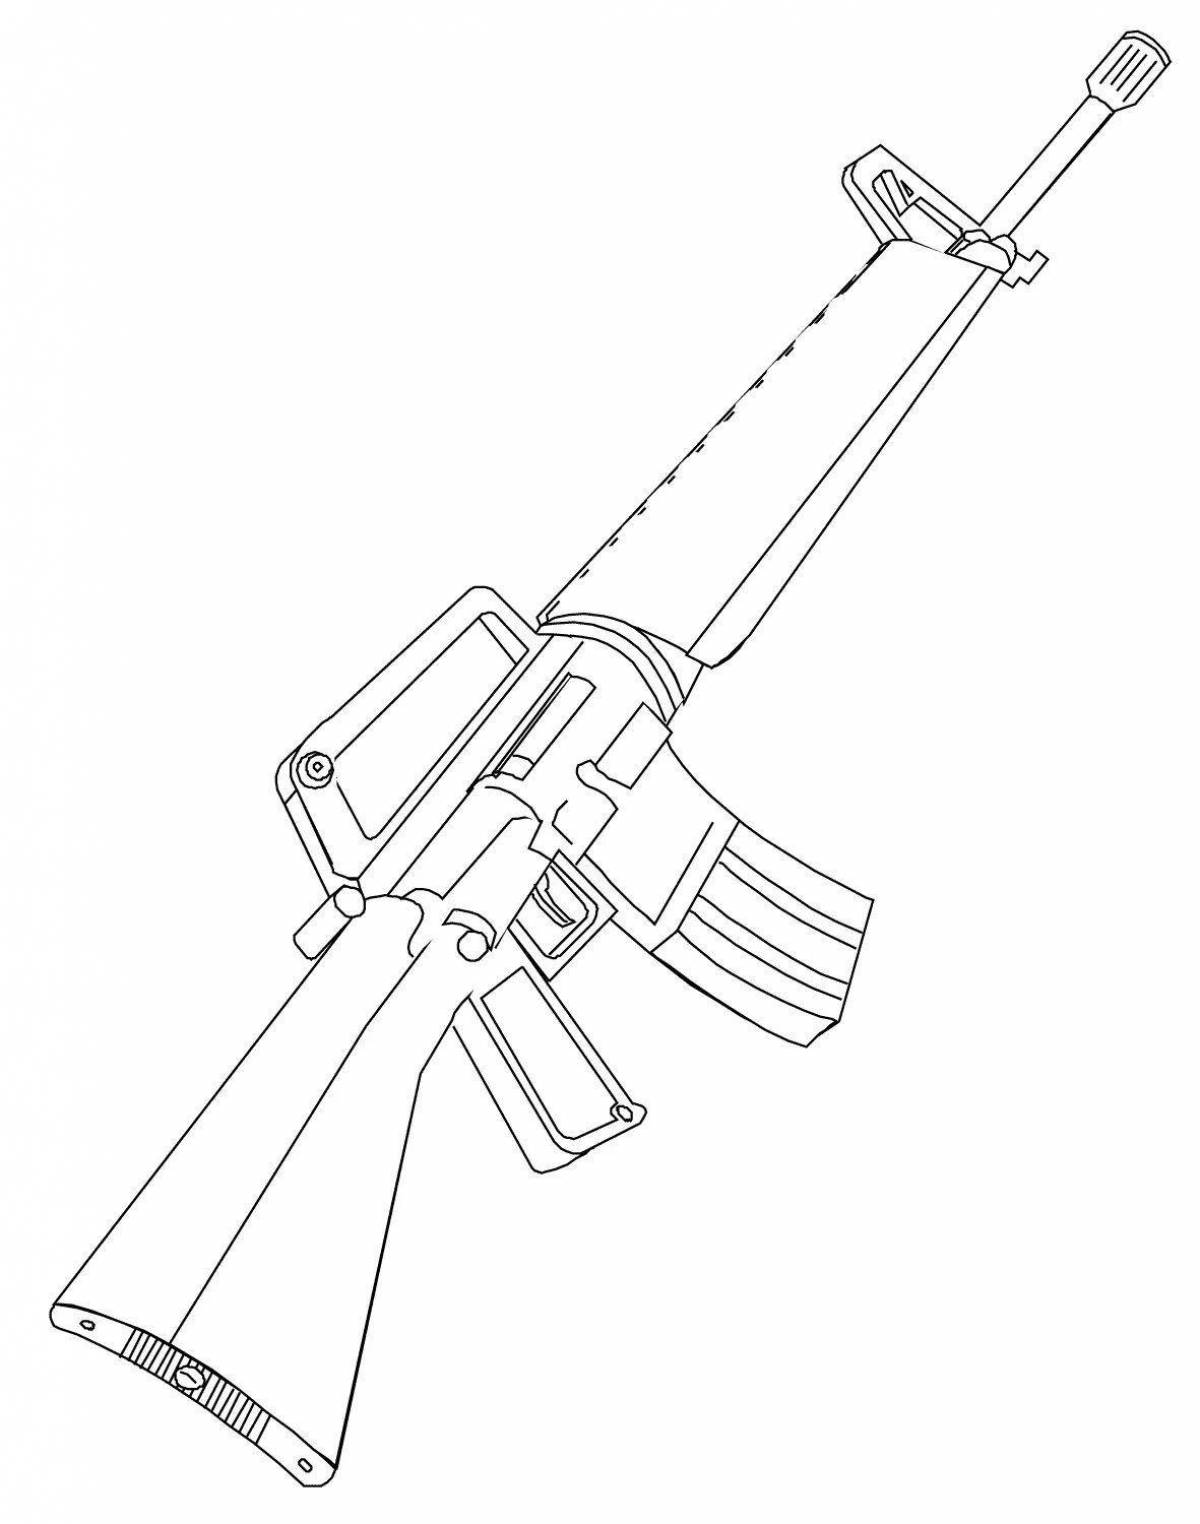 Children's rifle #4